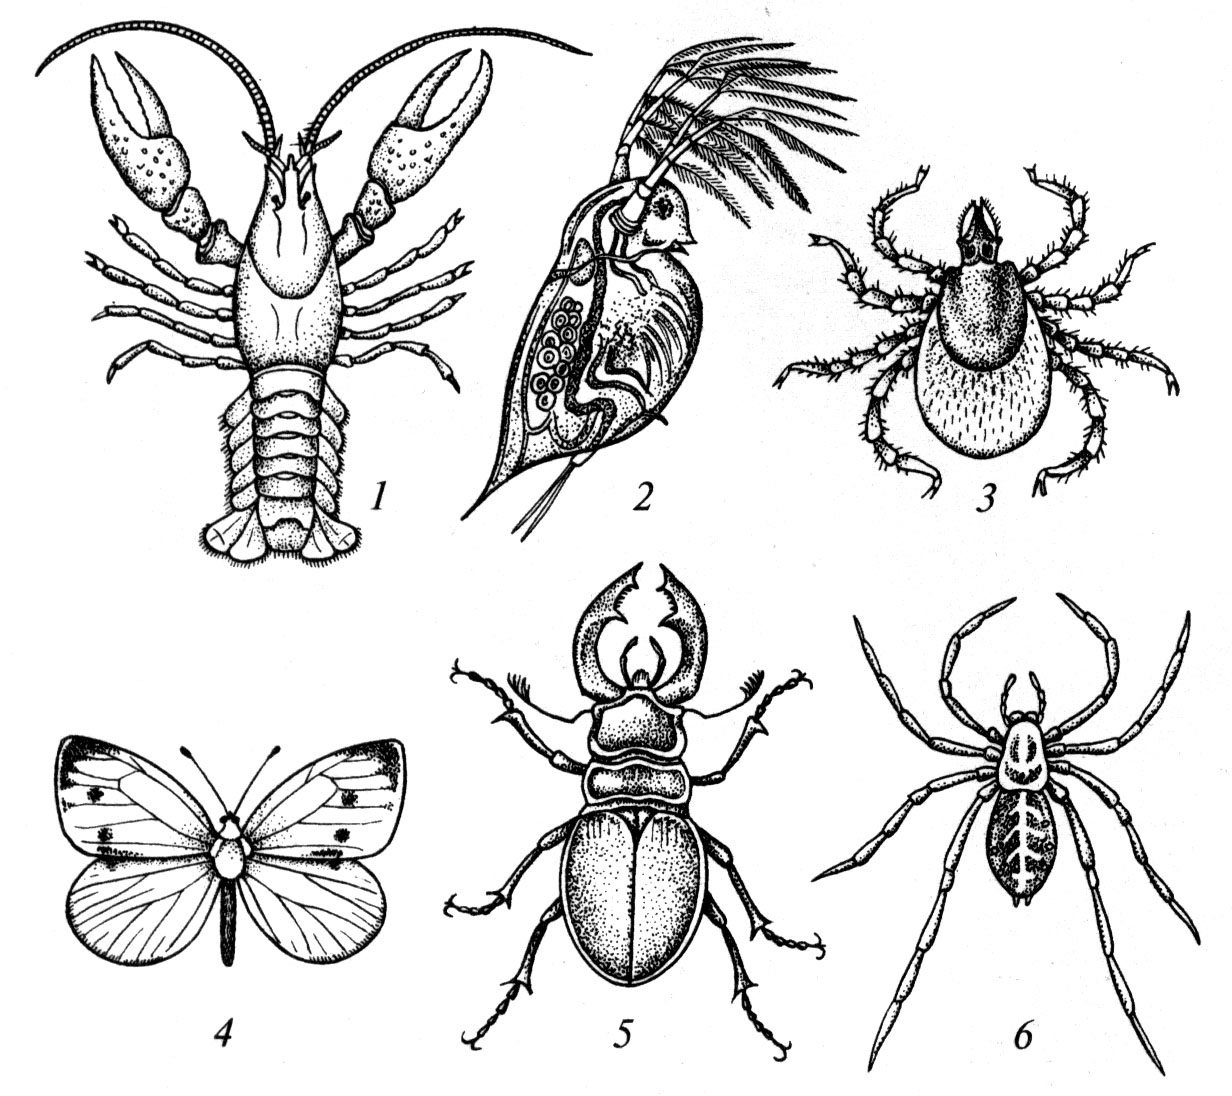 Насекомые относятся к типу членистоногие. Членистоногие паукообразные насекомые. Тип Членистоногие представители. Членистоногие рисунок. Насекомые схематично.